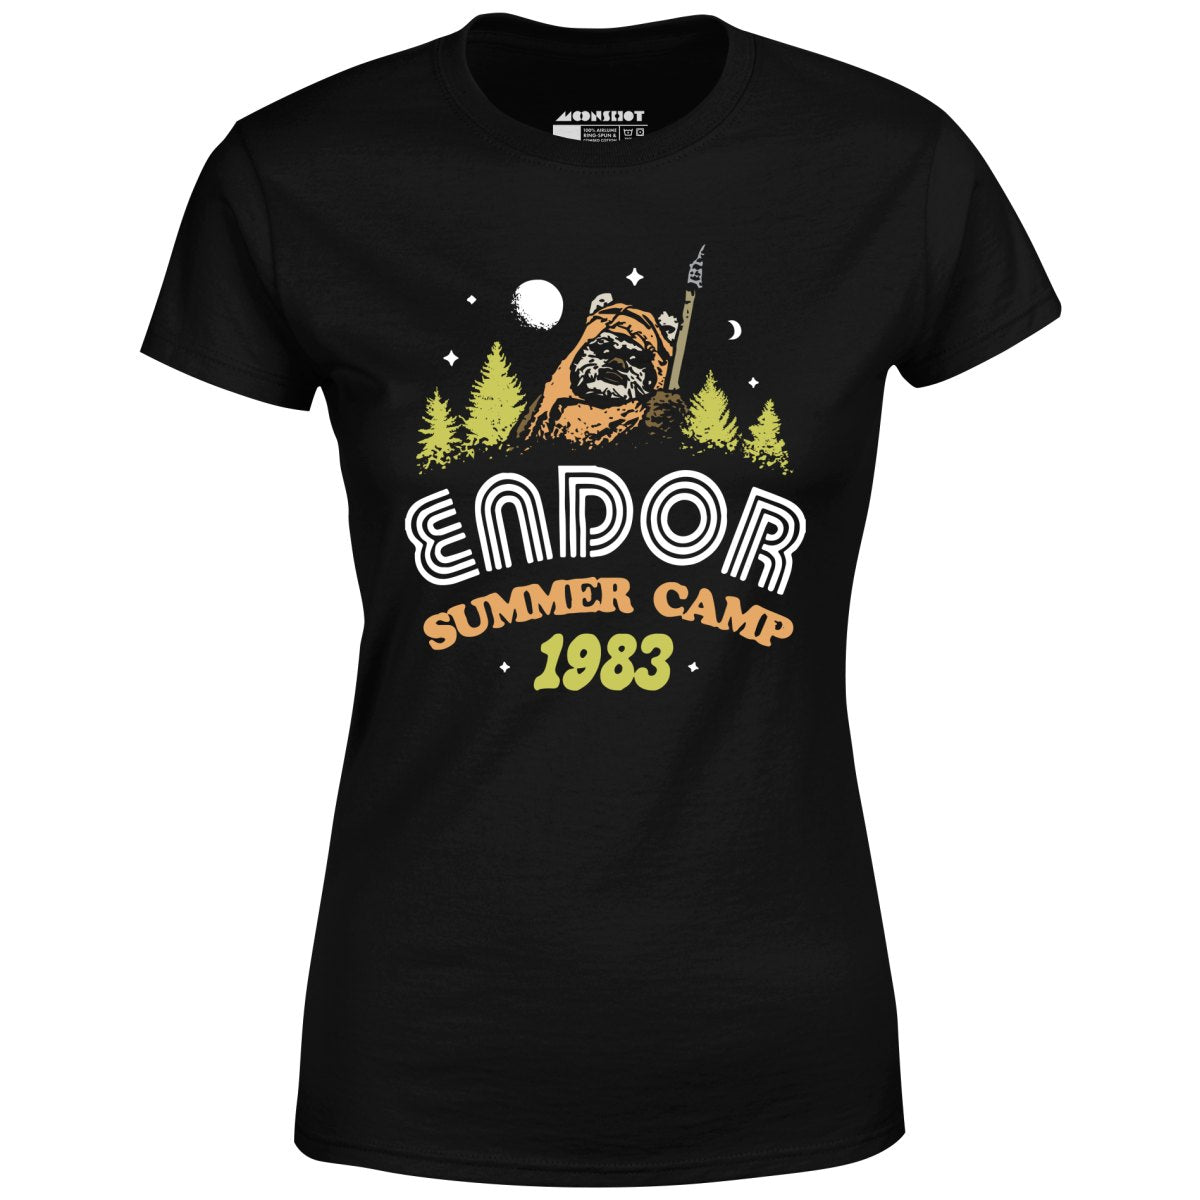 Endor Summer Camp - Women's T-Shirt